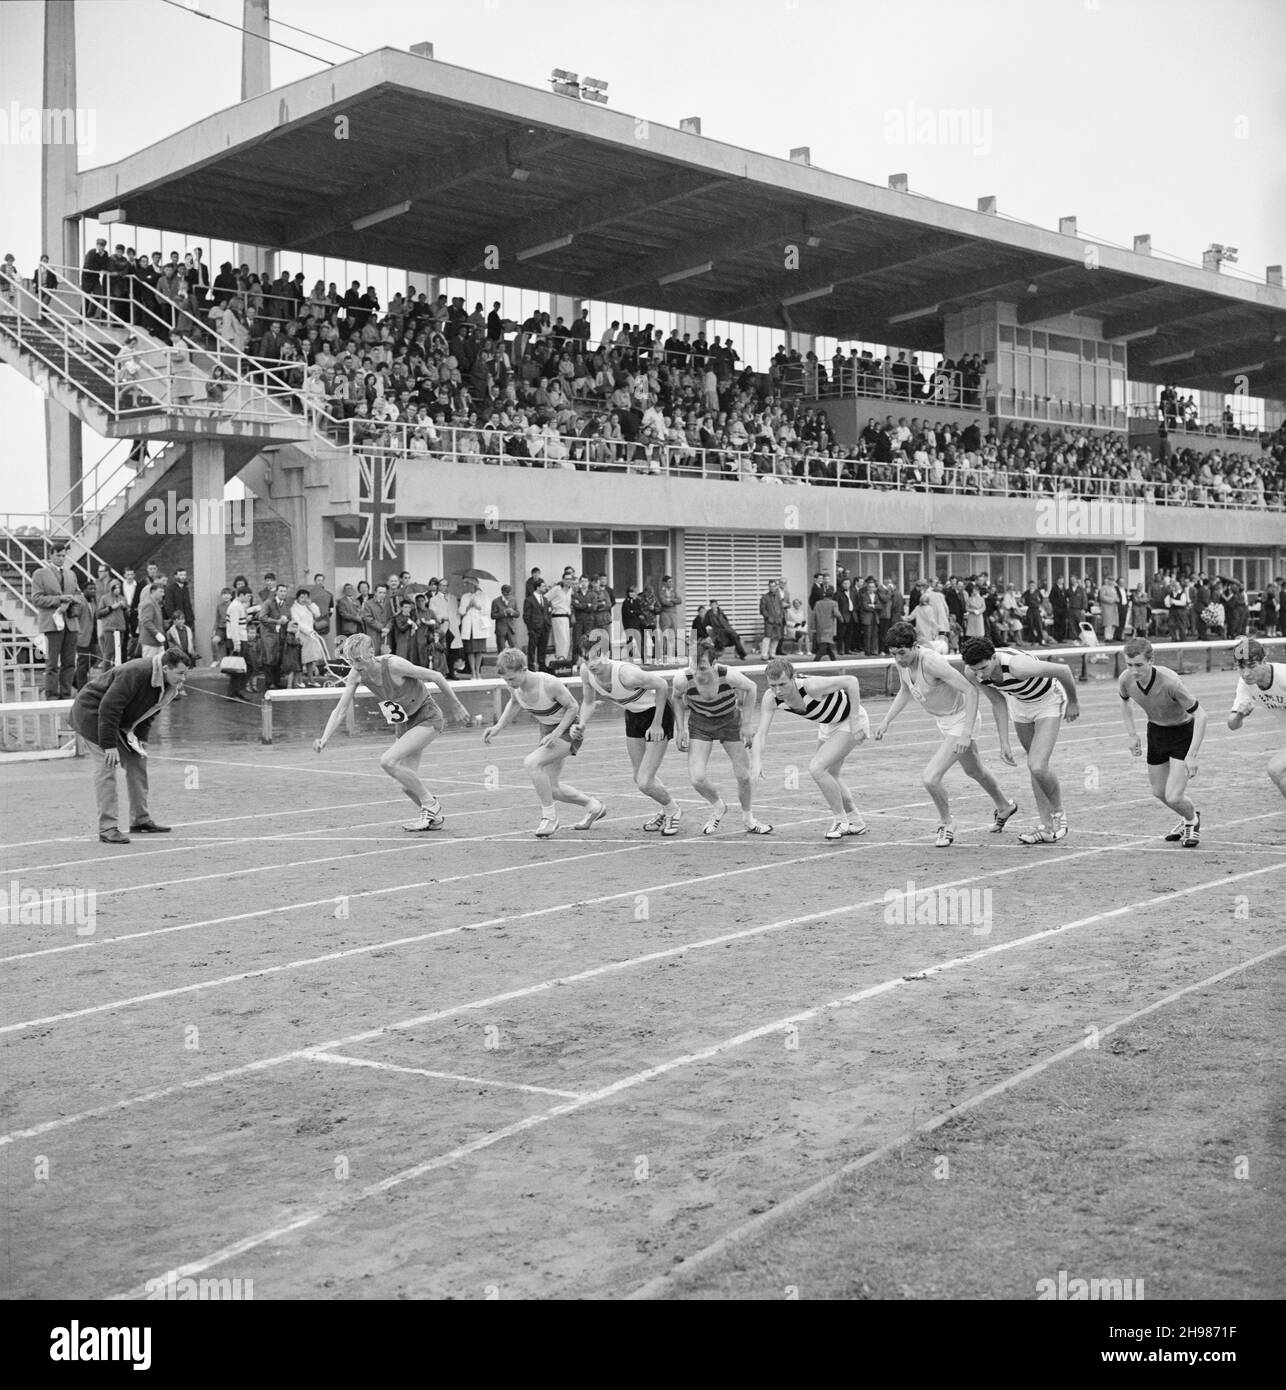 Copthall Stadium, Hendon, Barnett, London, 25/06/1966. Die Männer waren beim jährlichen Laing Sports Day, der im Copthall Stadium stattfindet, an der Startlinie eines Streckenevents mit Zuschauern auf Ständen im Hintergrund. Im Jahr 1966 fand am 25th. Juni der jährliche Laing Employees' Sports Day im Copthall Stadium in Hendon statt. Es war das erste Mal, dass die Veranstaltung dort stattfand, nachdem zuvor der Laing Sports Ground in Elstree stattgefunden hatte. Eine Reihe von Veranstaltungen umfasste Leichtathletik und einen Fußballwettbewerb, und die Teilnehmer reisten von den regionalen Büros und Standorten des Unternehmens, darunter aus Schottland und Carlisle. Da war al Stockfoto